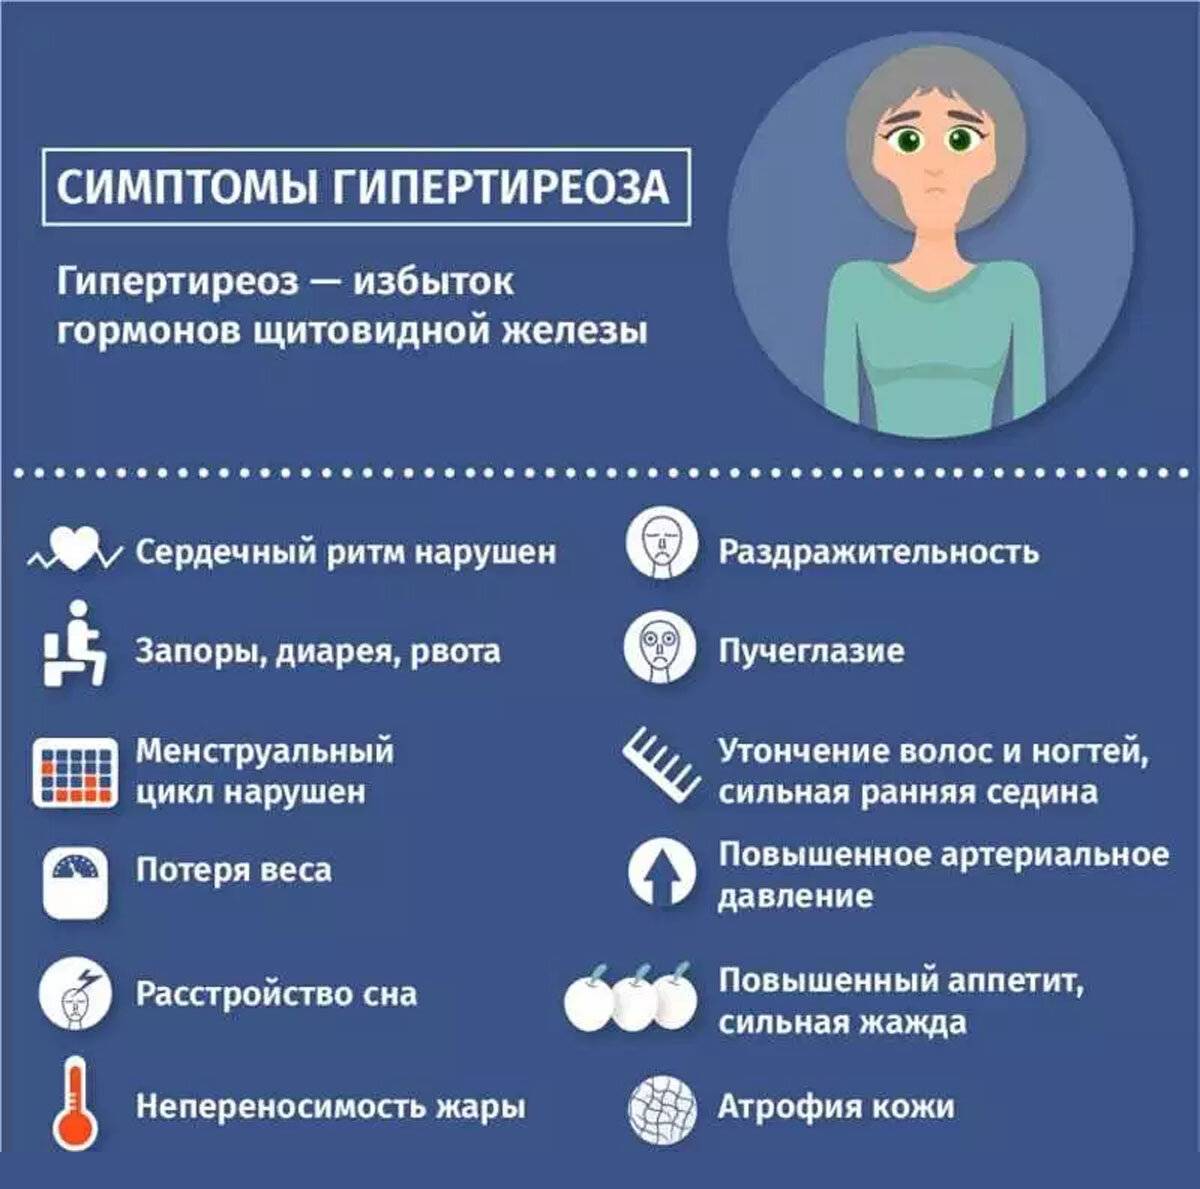 Тиреотоксикоз: симптомы у женщин, лечение и питание